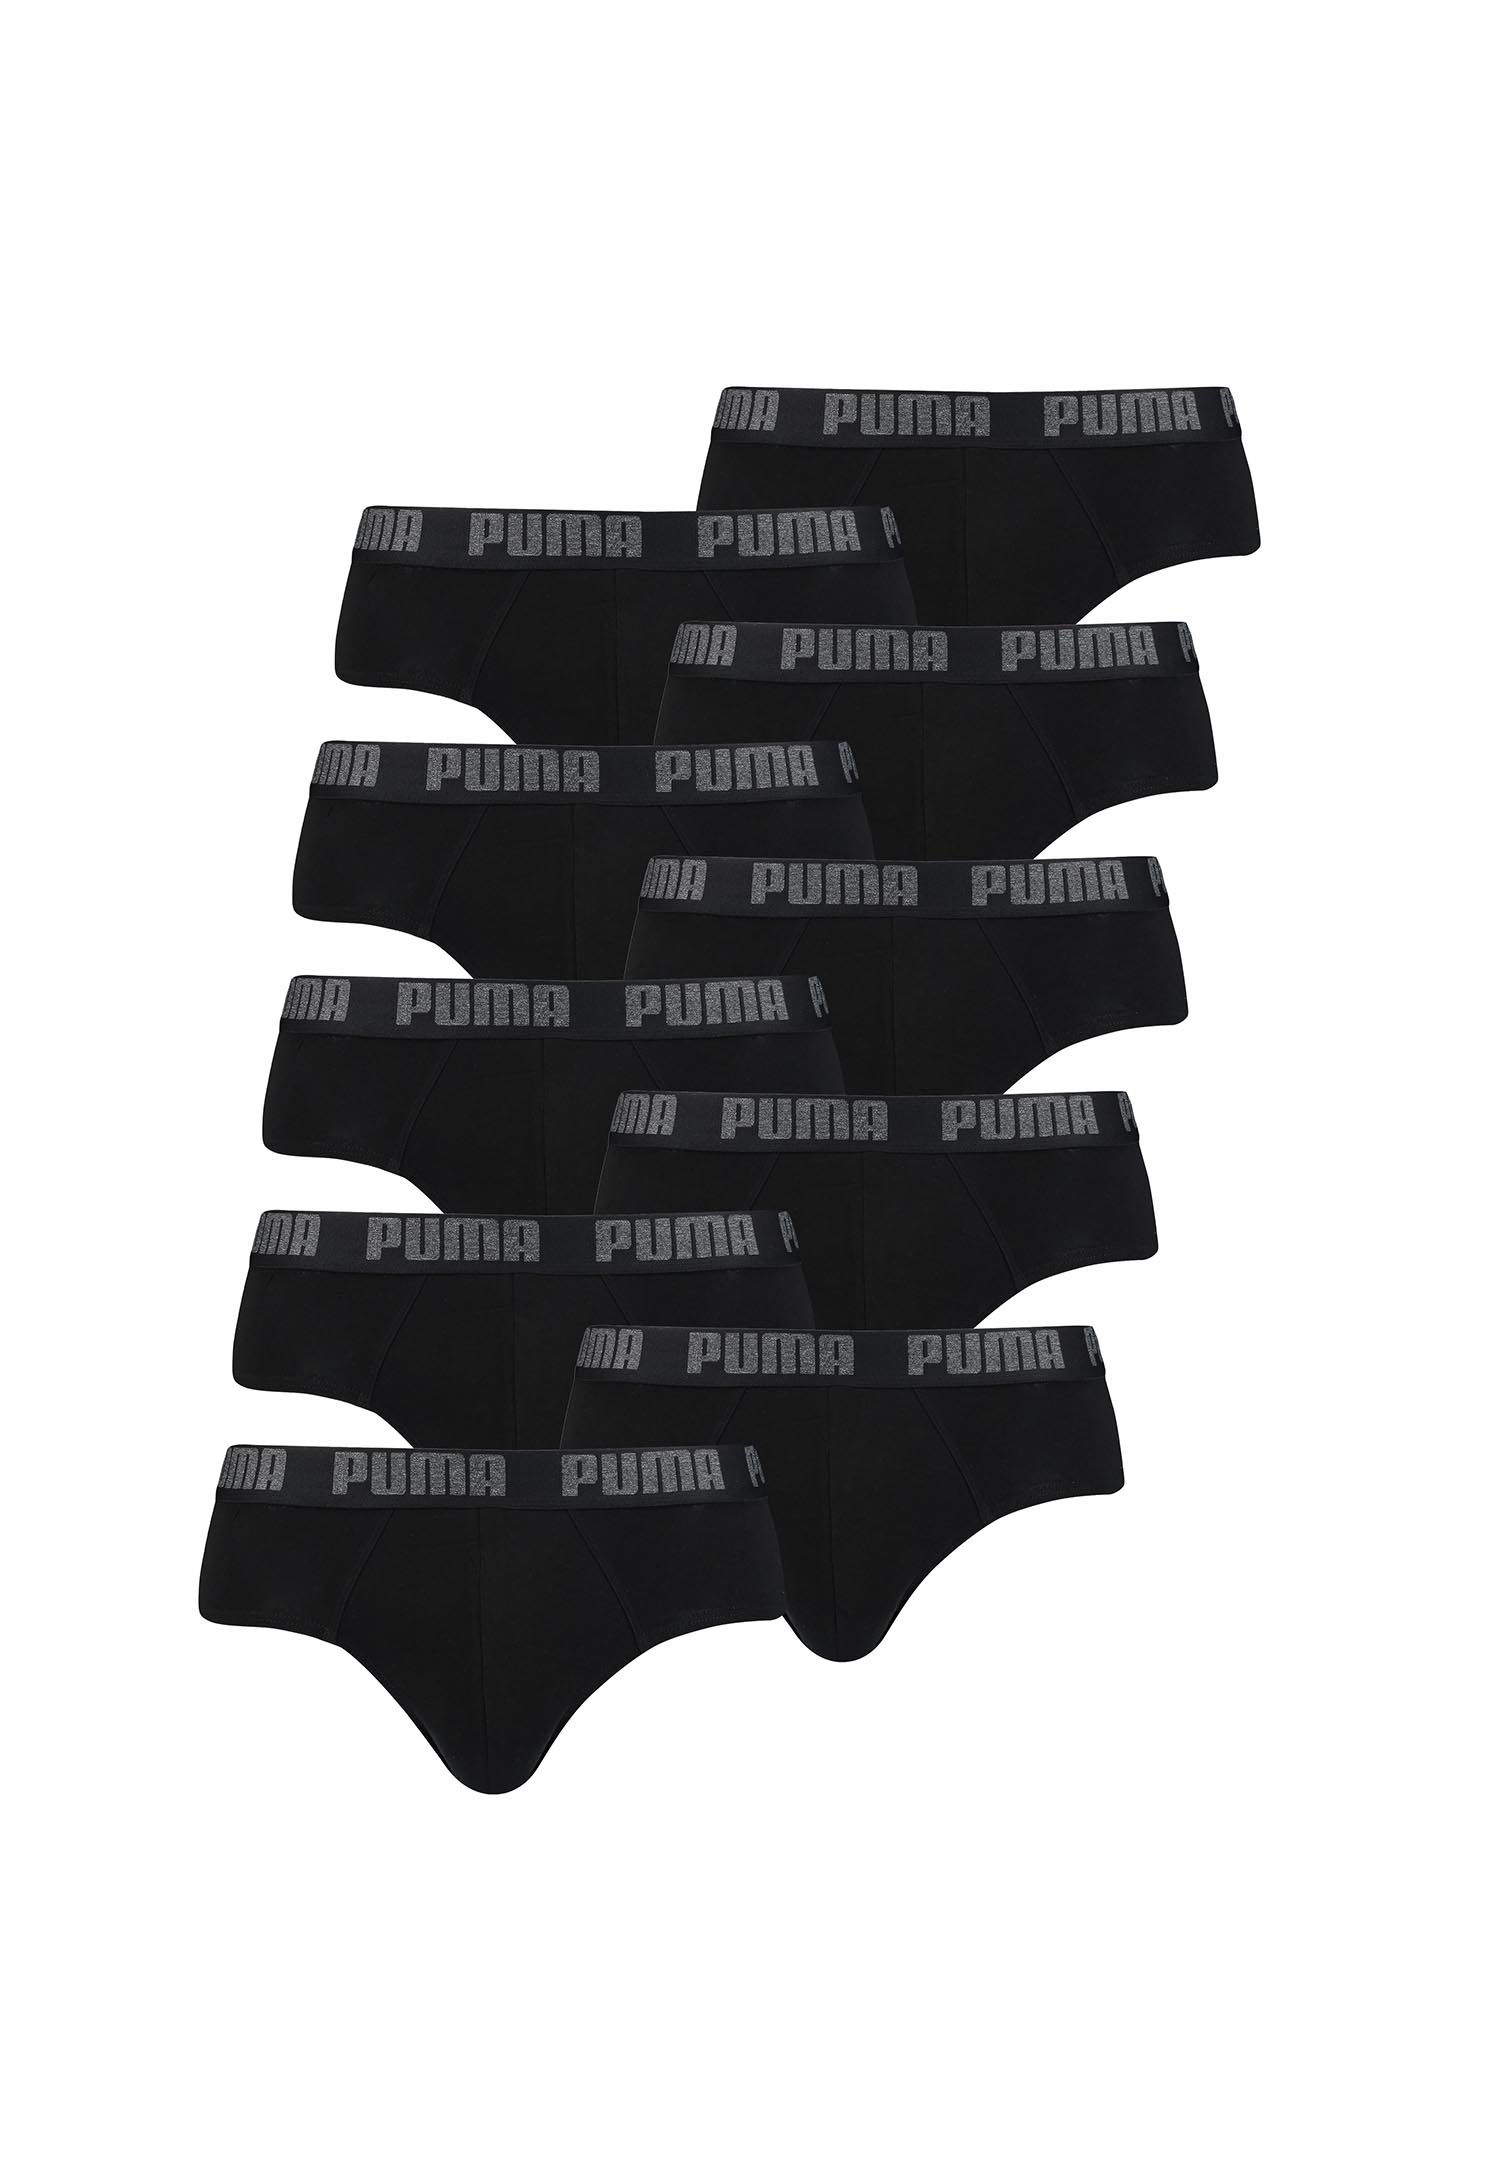 Puma Basic Brief Men Herren Unterhose Pant Unterwäsche 10er Pack